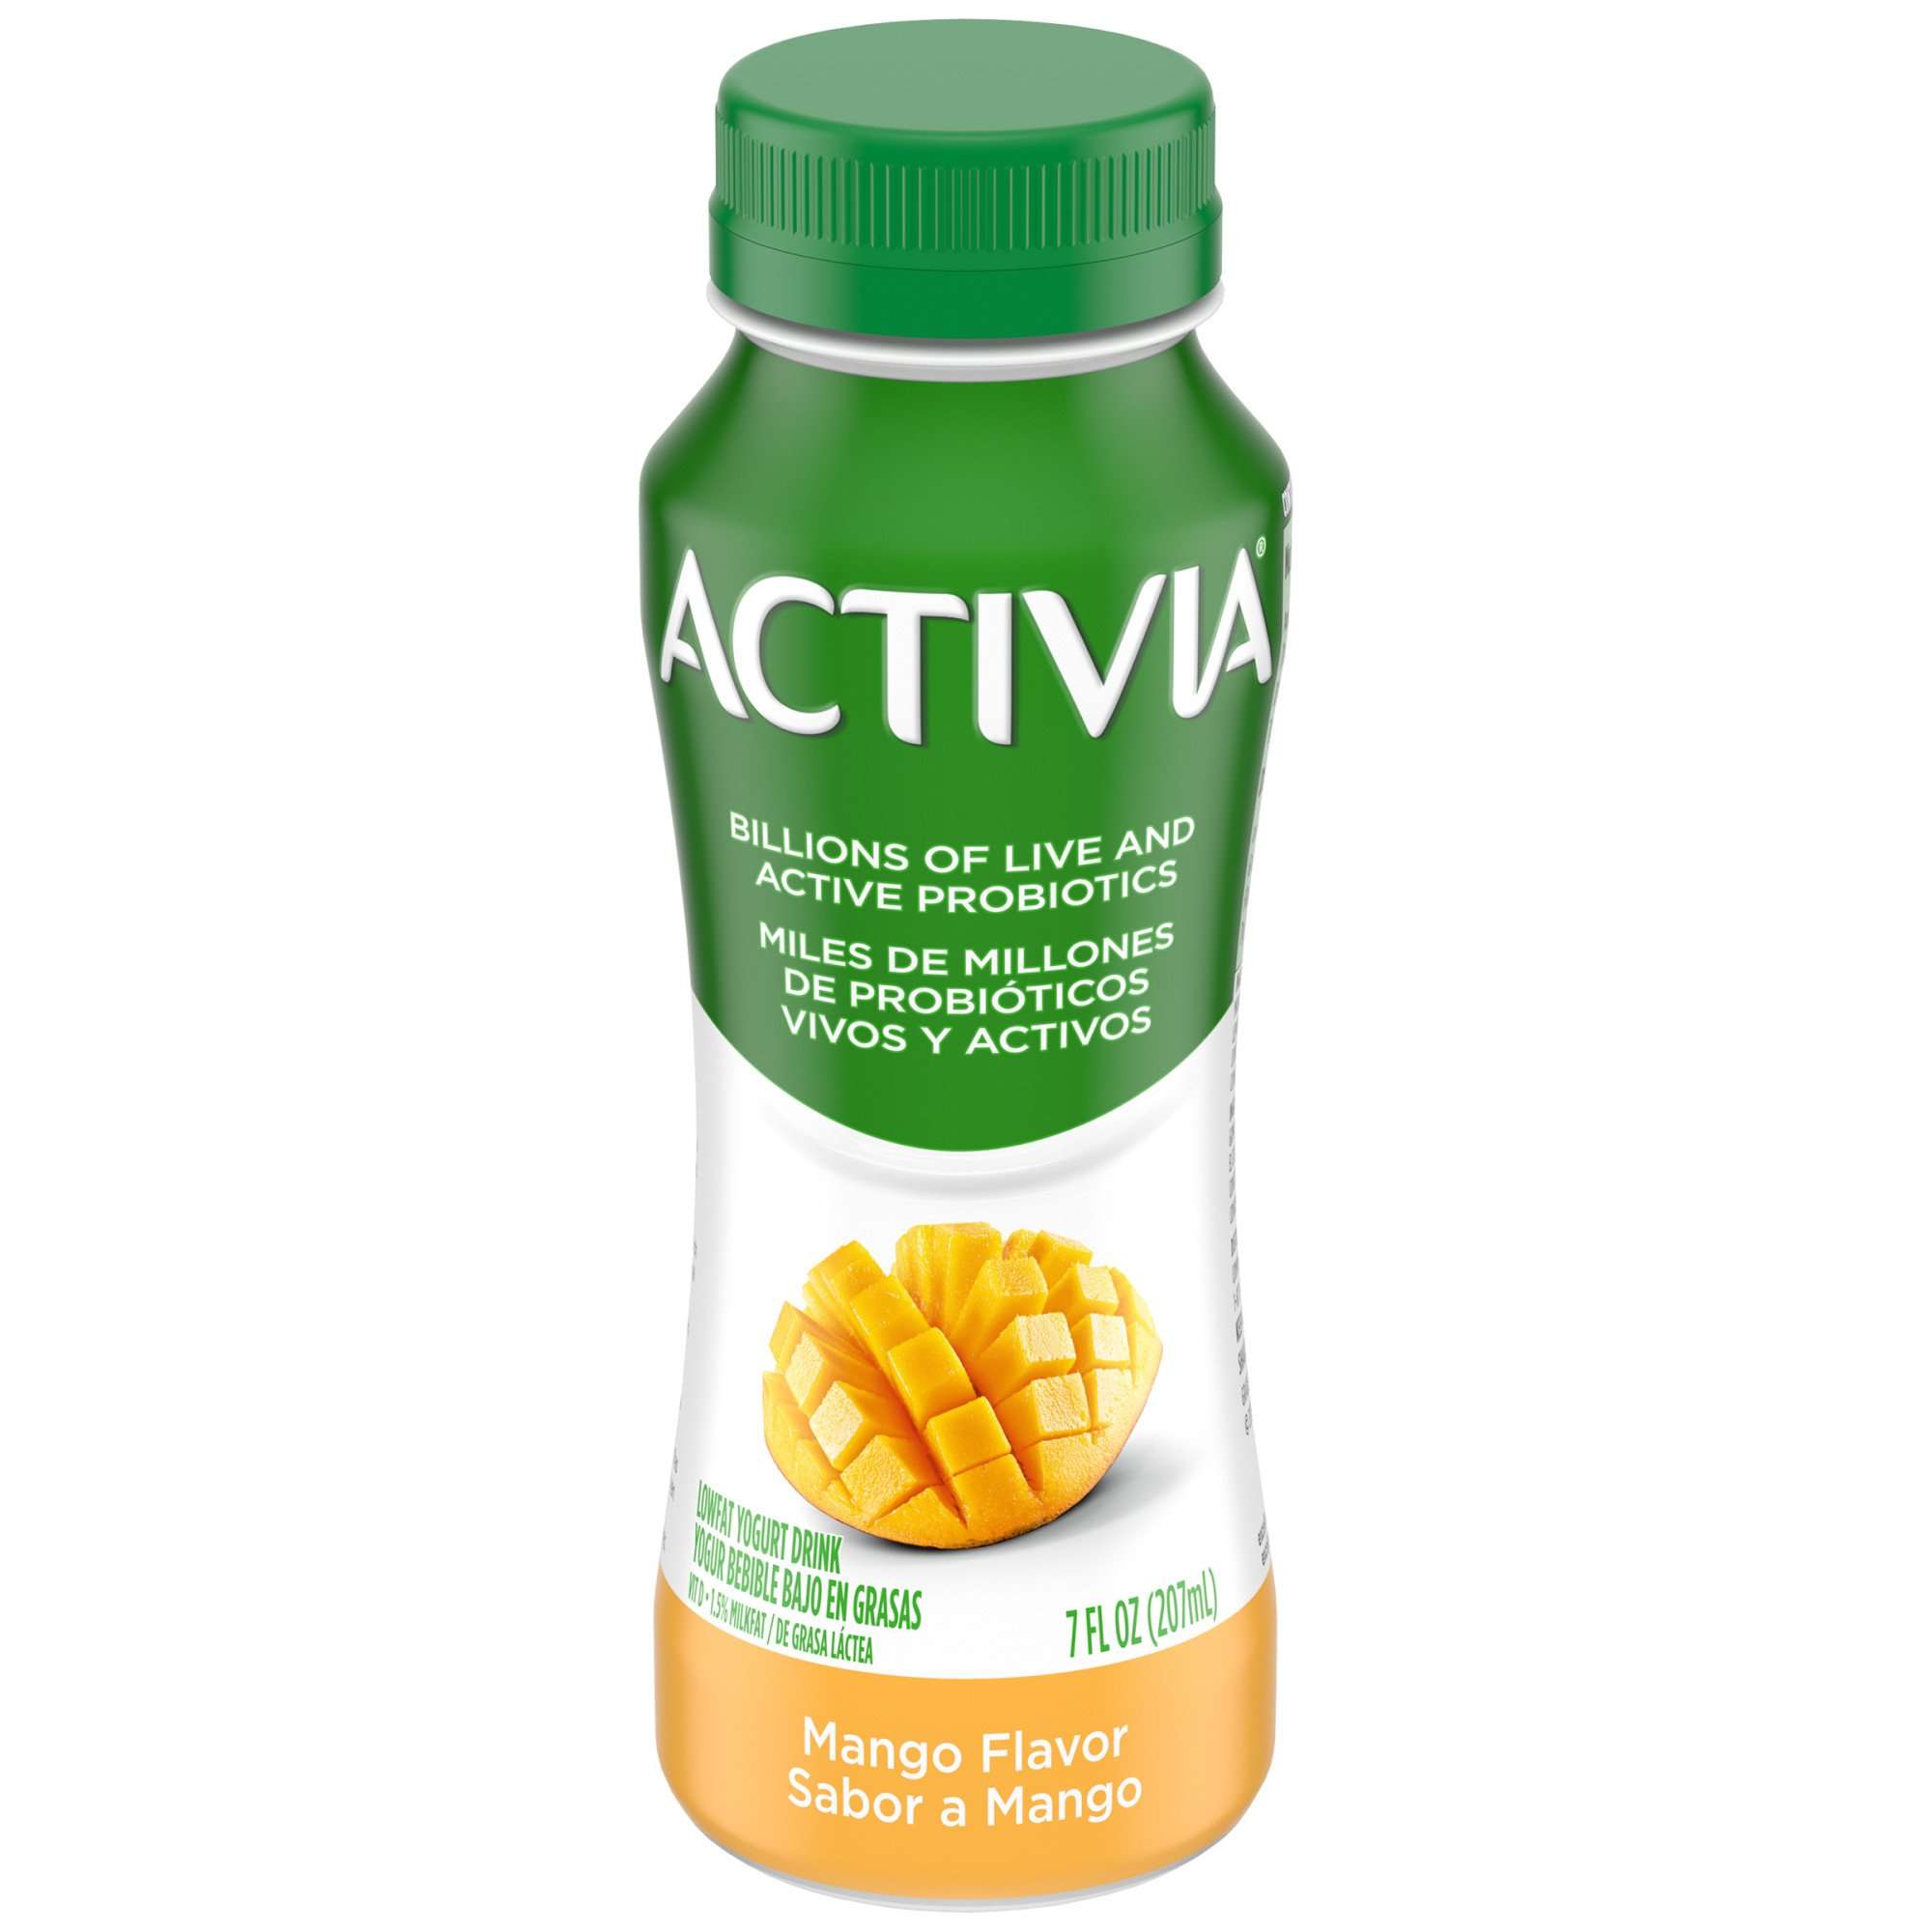 Dannon Activia Mango Probiotic Dairy Drink